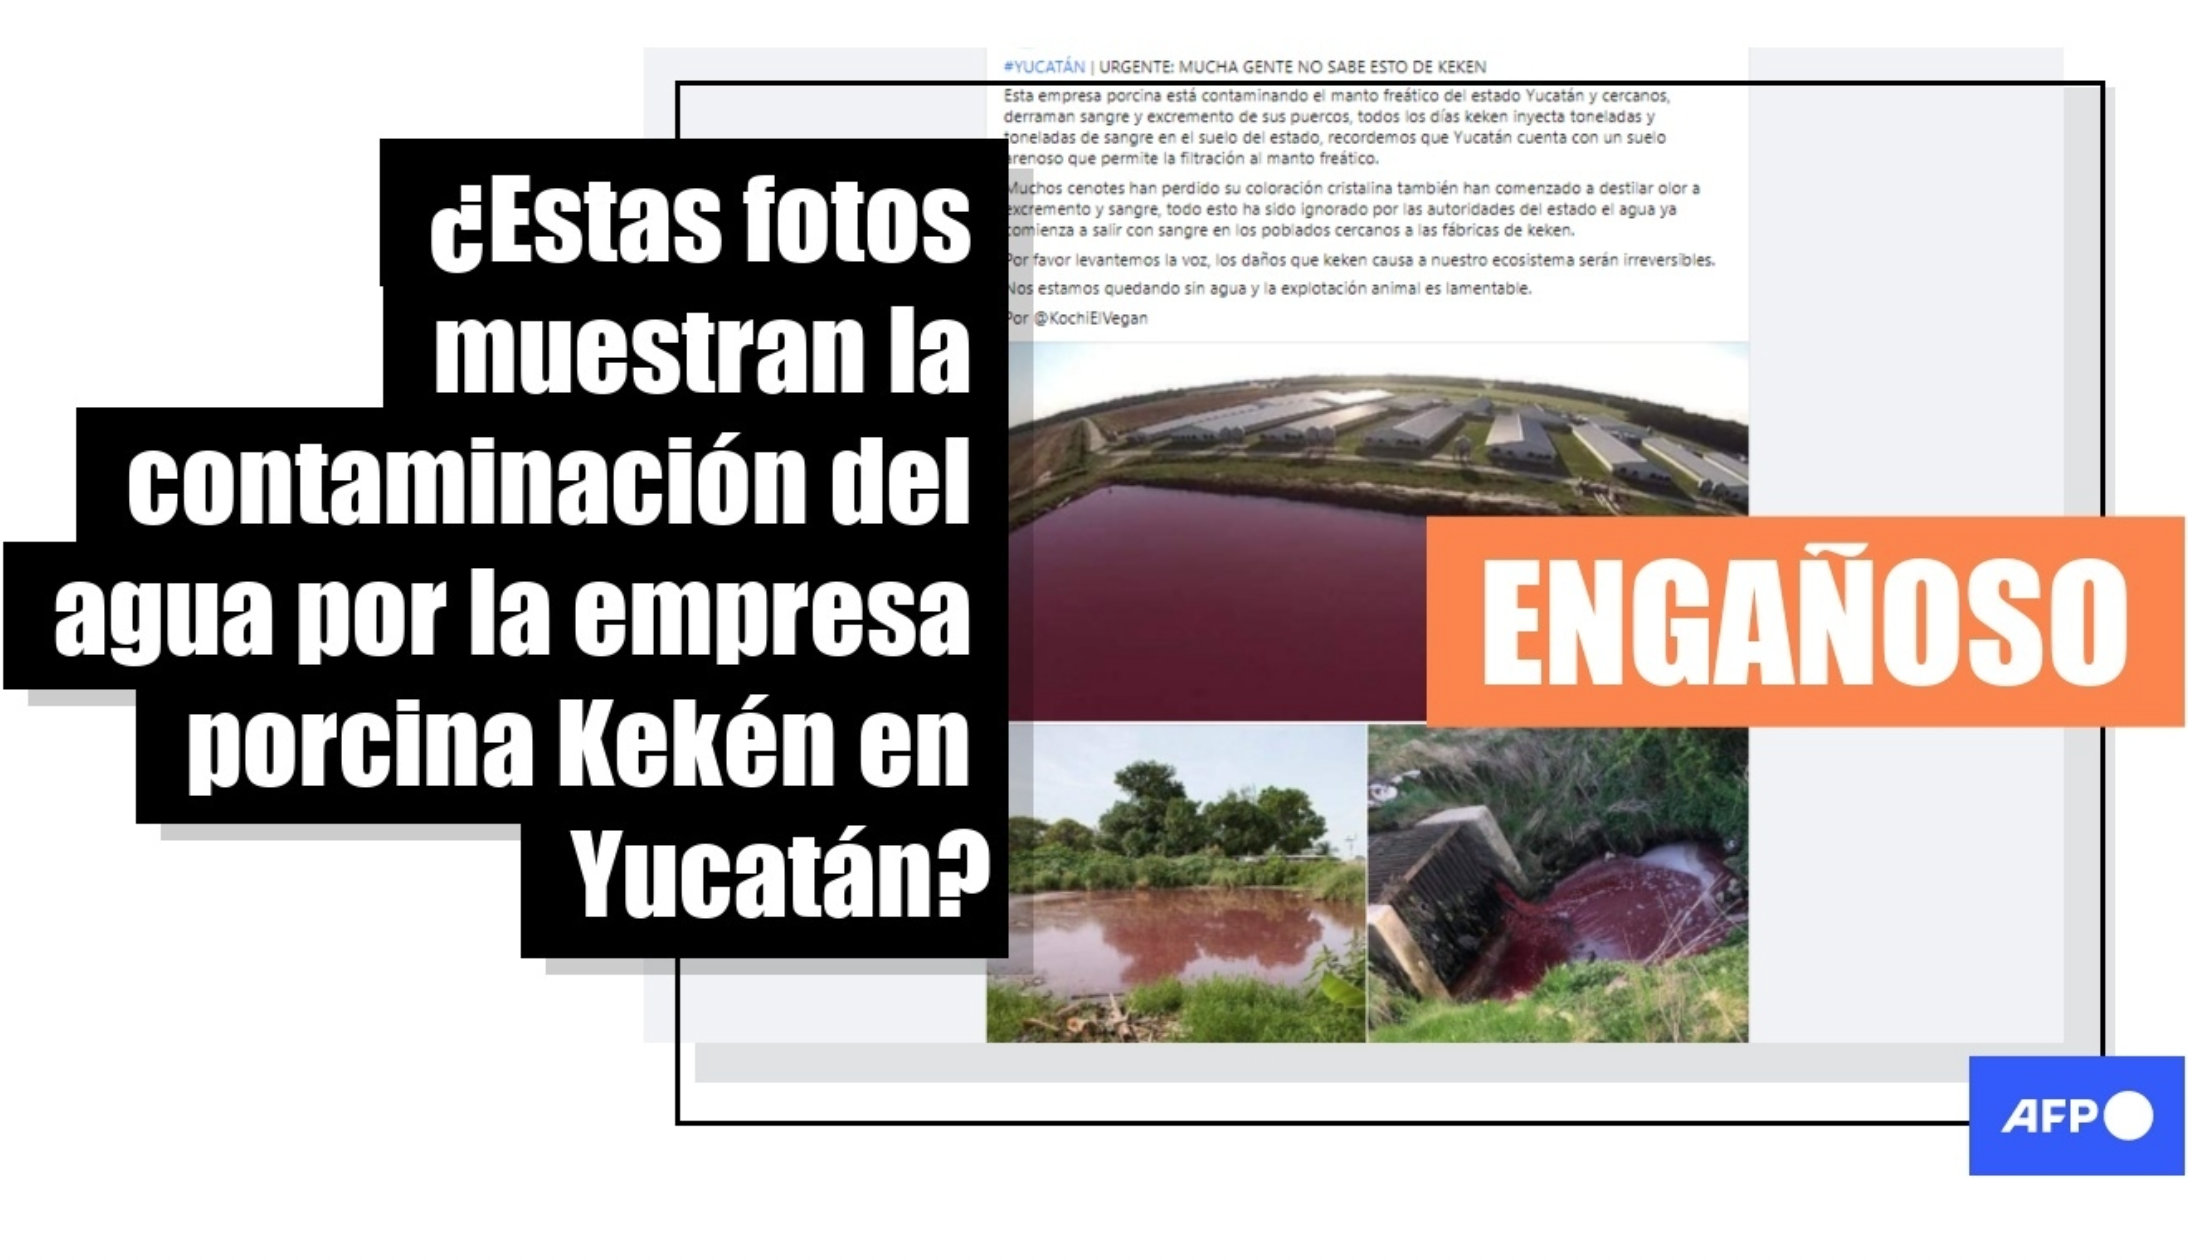 Kekén, empresa mexicana productora de carne no contaminó agua como se dijo en medios; la agencia internacional AFP desmiente fake news.